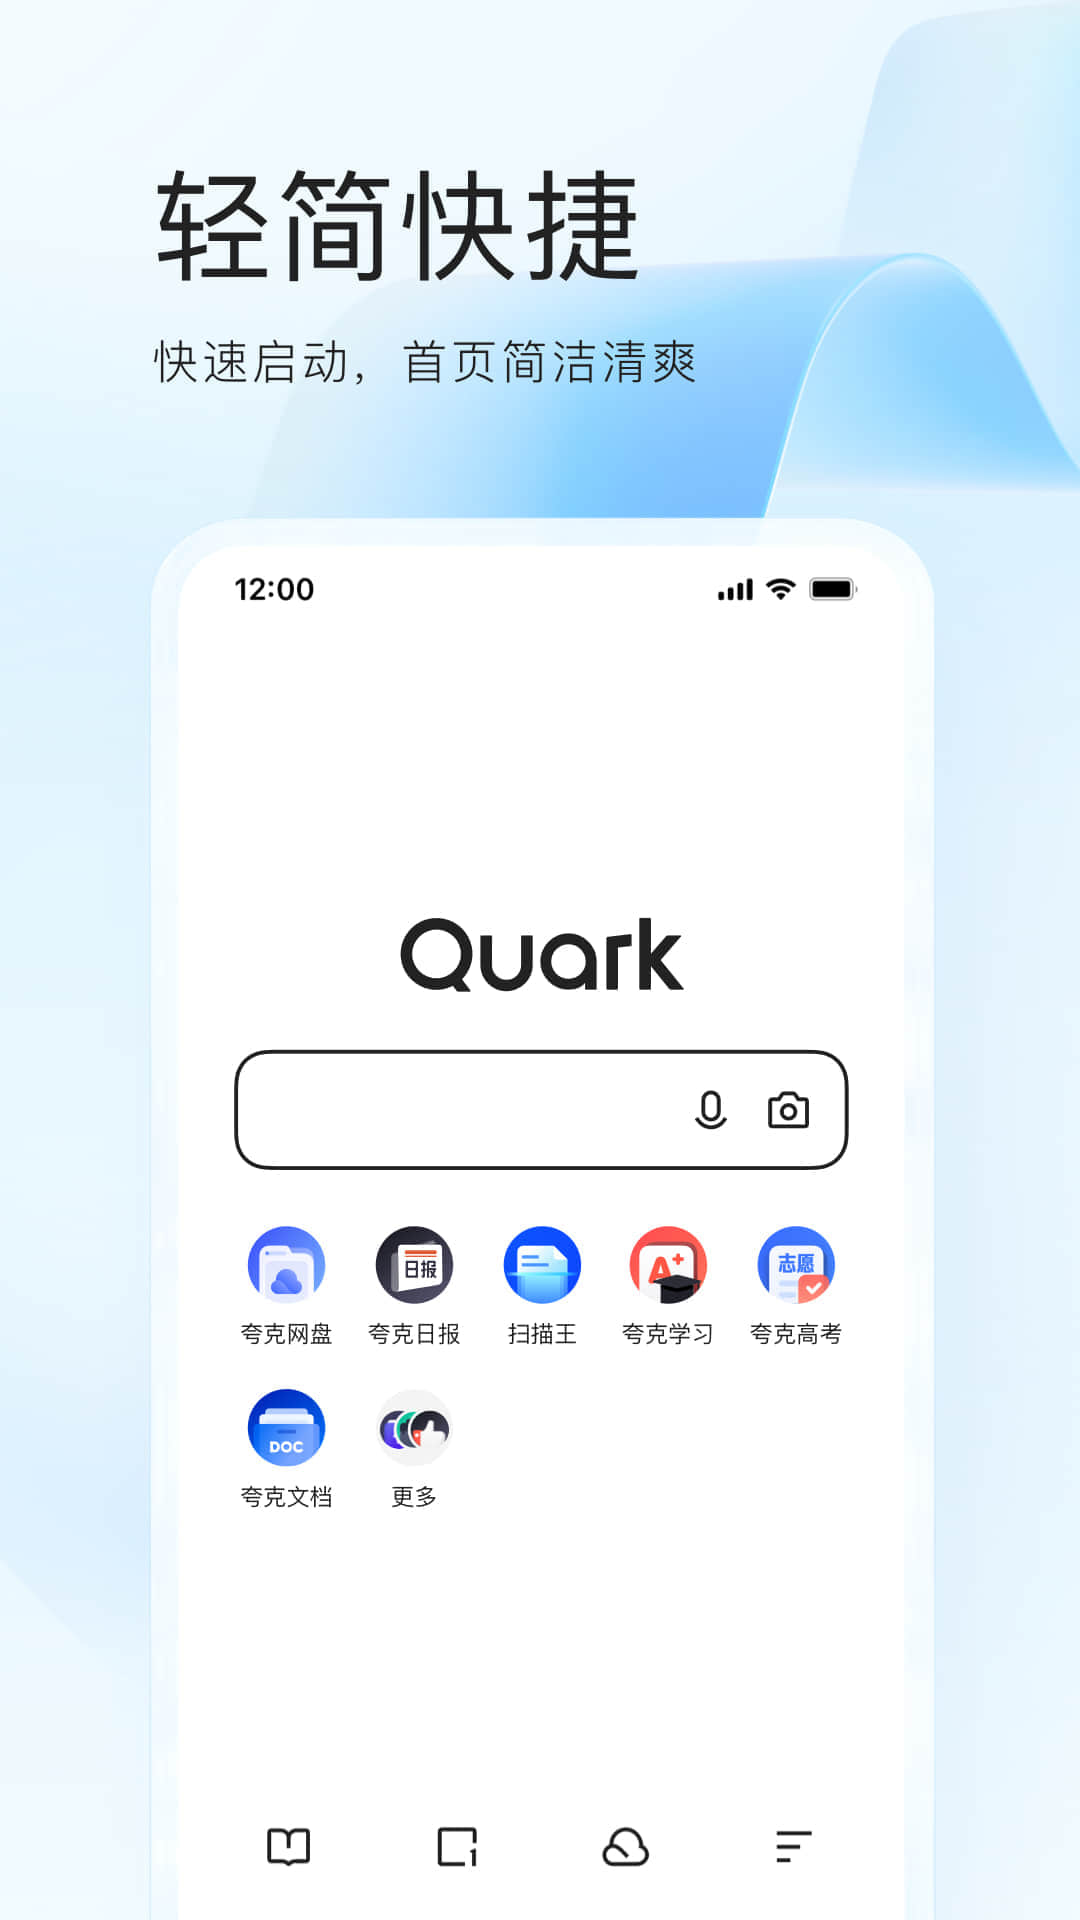 夸克app最新版